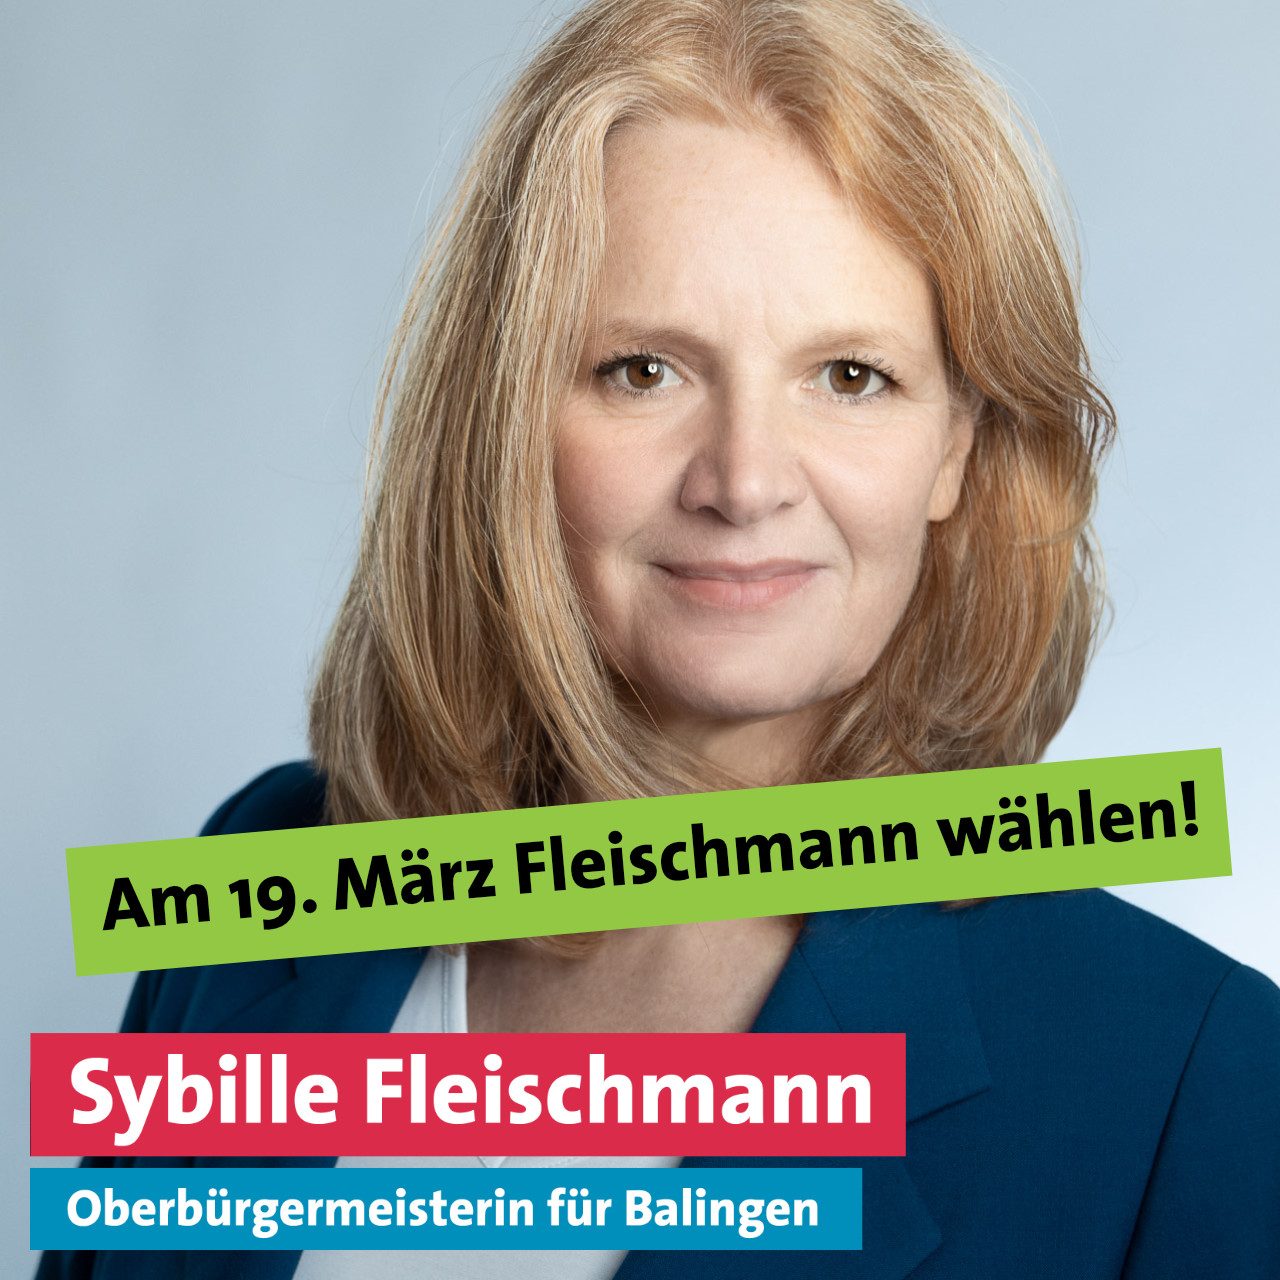 Am 19. März Fleischmann wählen!